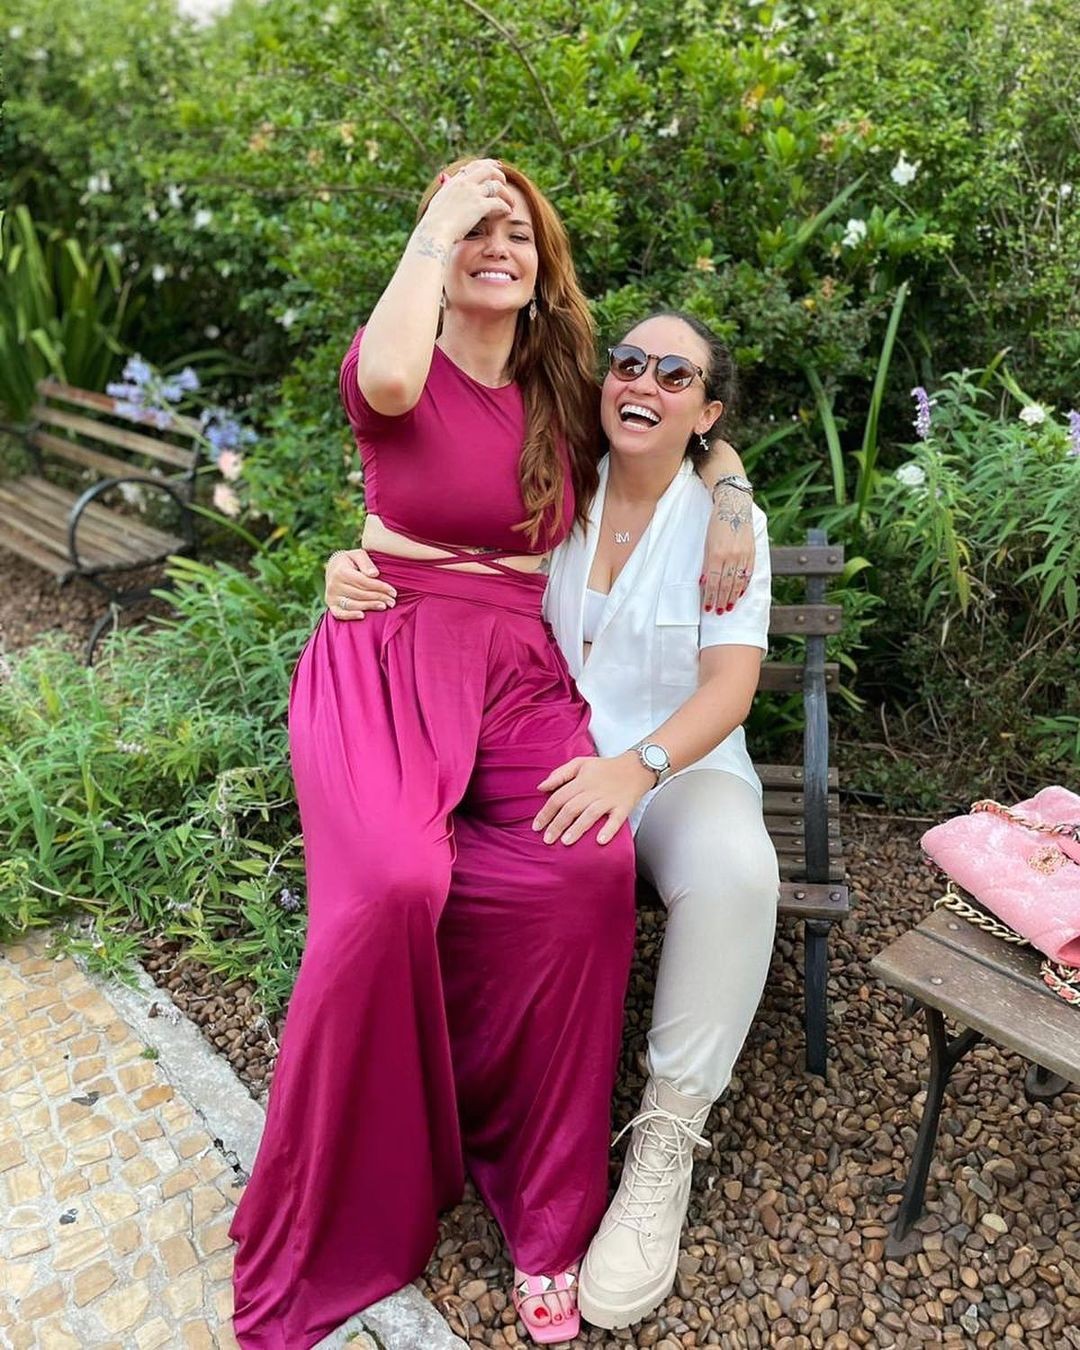 Marcela Mc Gowan e Luiza (Foto: Reprodução/Instagram)